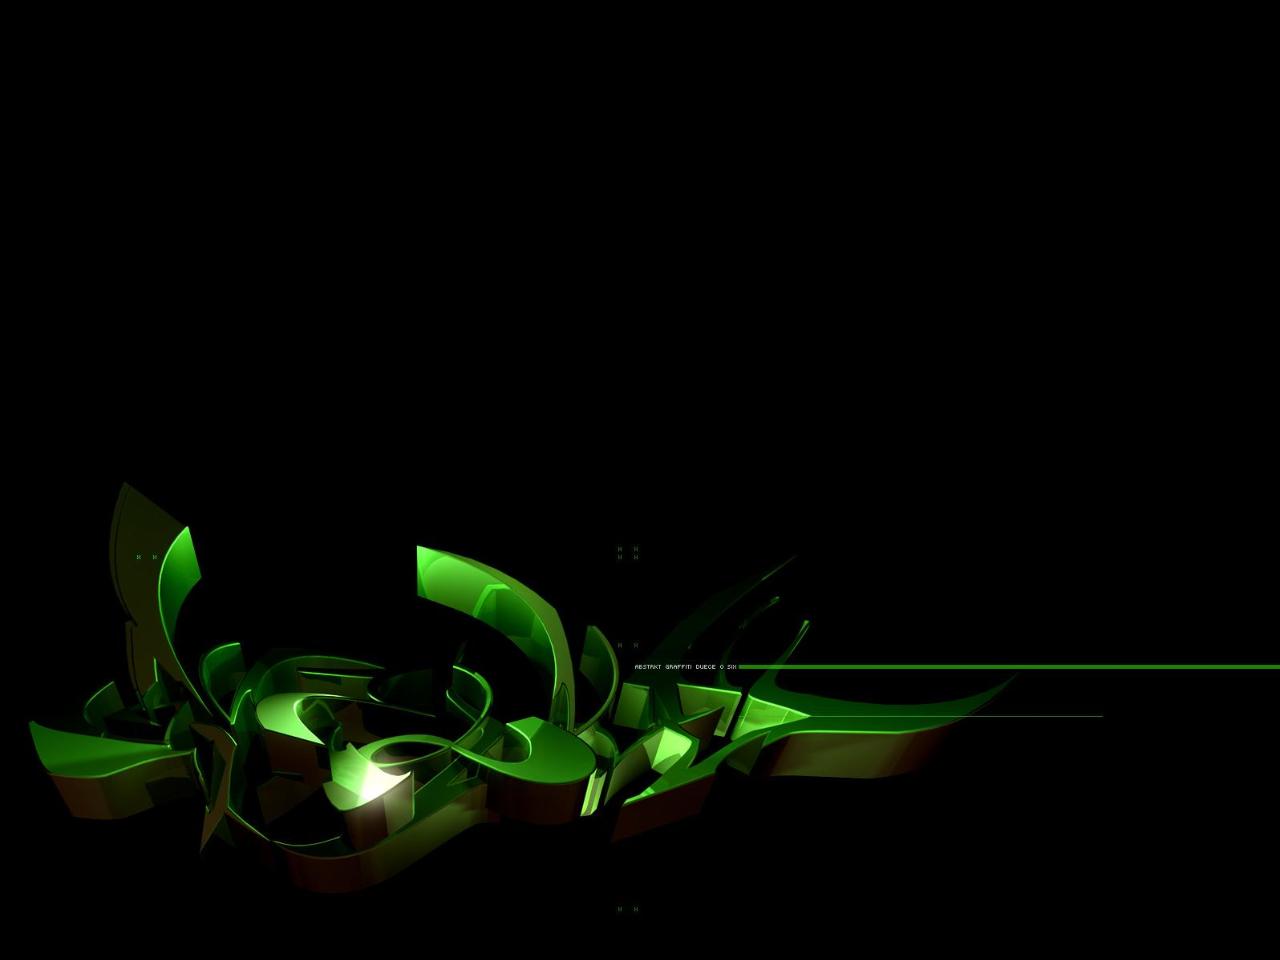 http://1.bp.blogspot.com/_uTGKd6u5pJ4/TUtprbCG72I/AAAAAAAAAWk/PAGAoZqs7pM/s1600/3D+green+in+black+graffiti+wallpaper.jpg